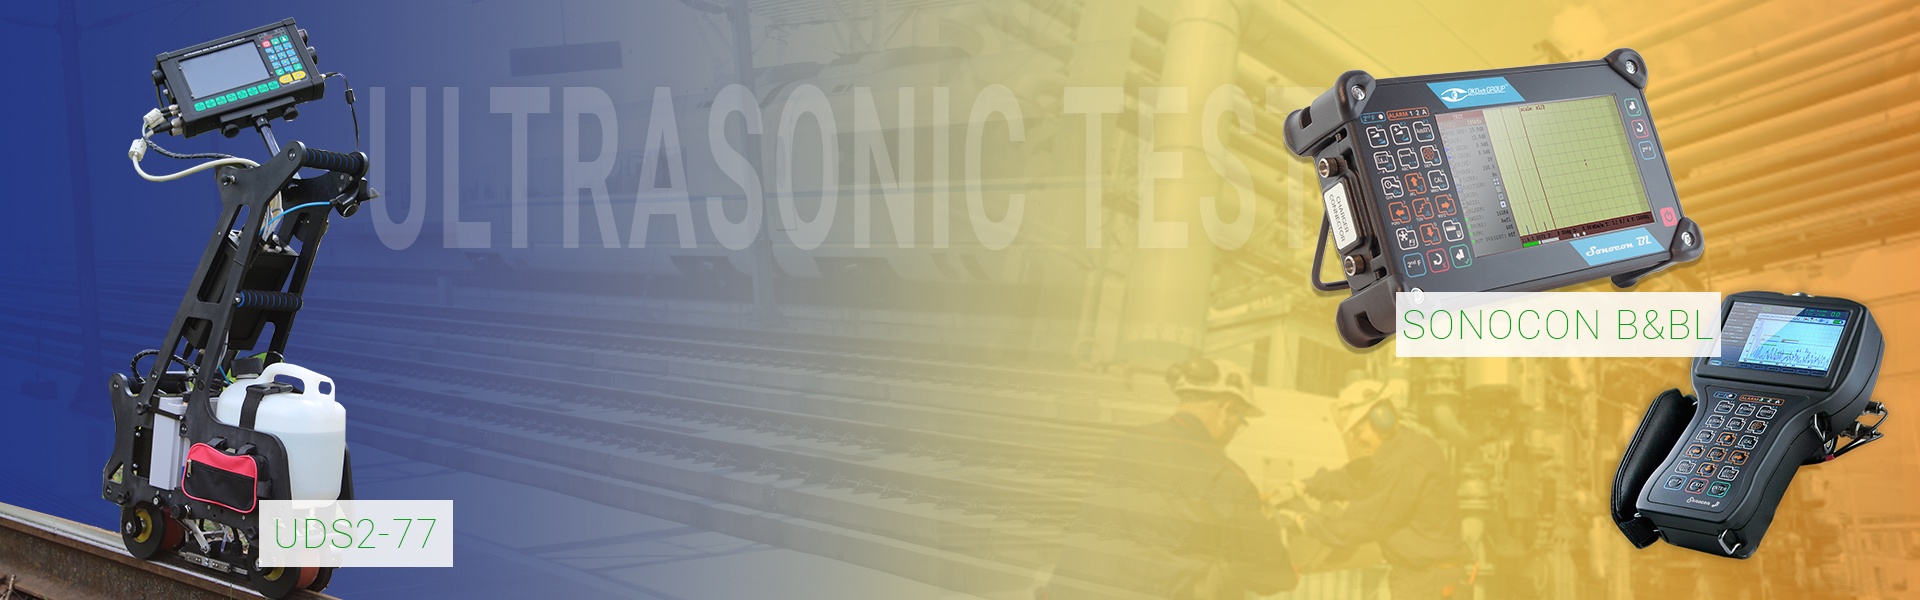 Ultrasonic flaw detectors